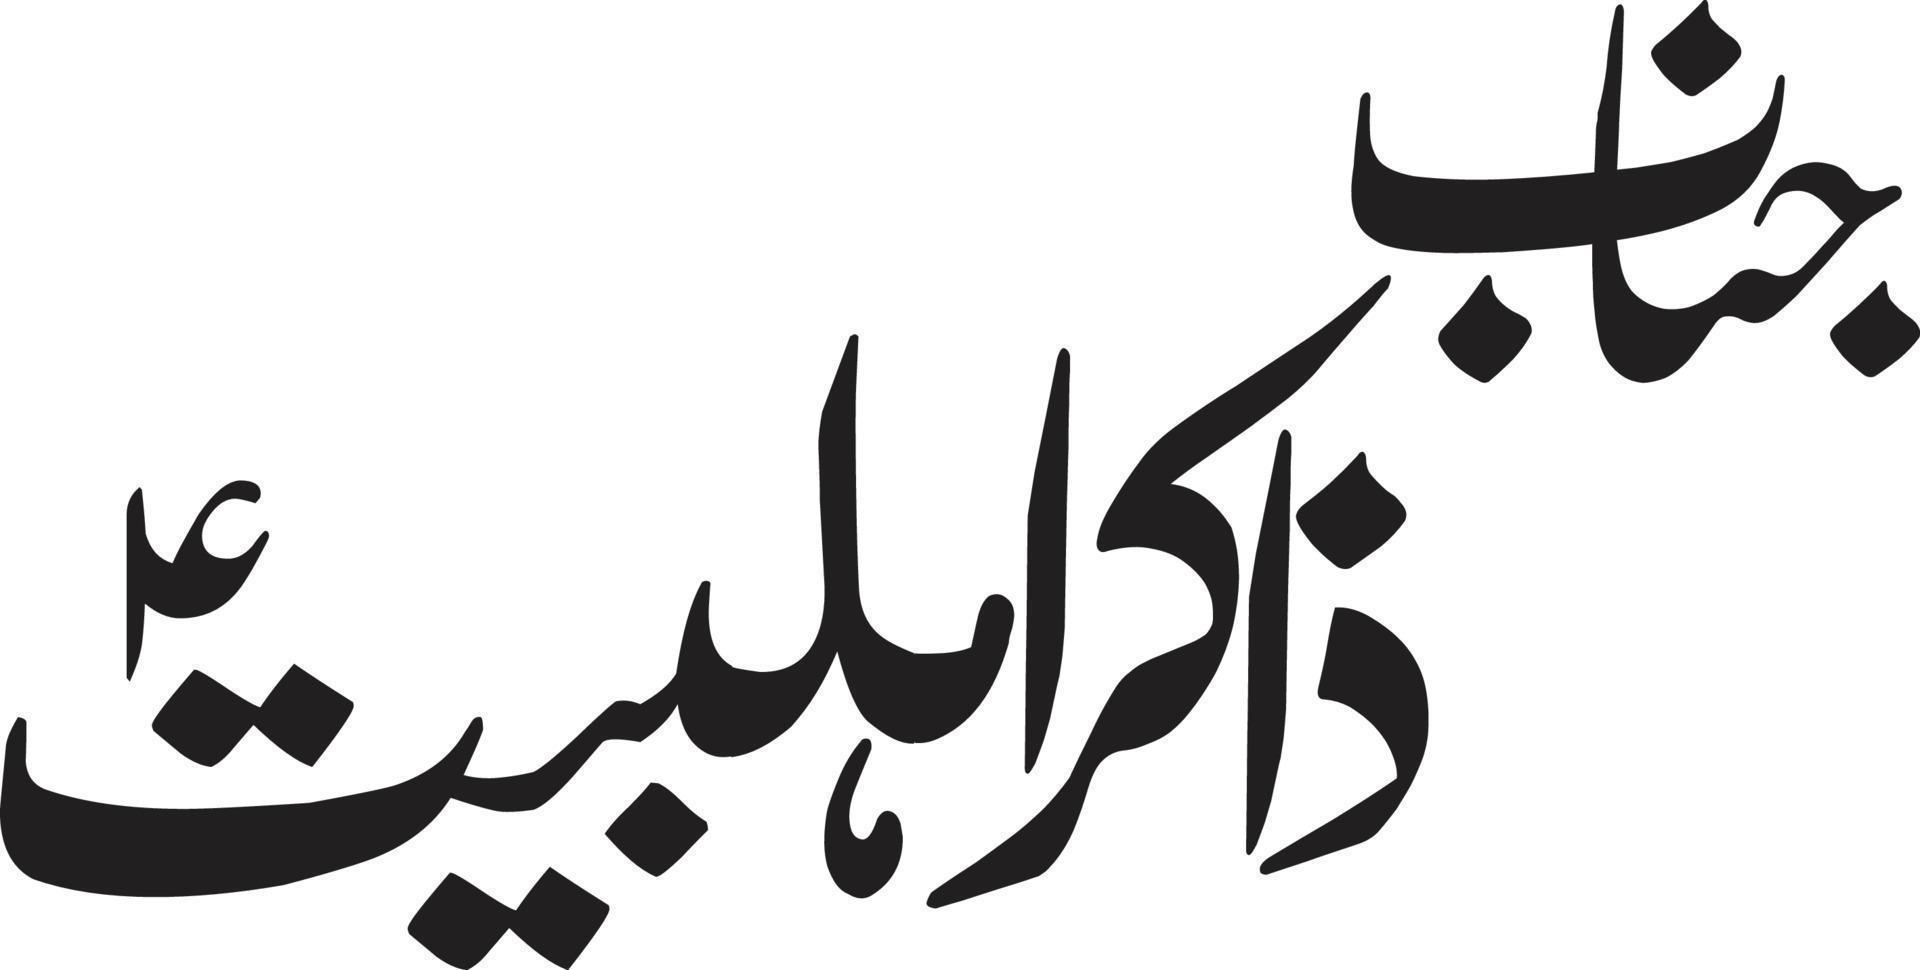 janab zakir ahlbrayt titre islamique ourdou calligraphie arabe vecteur libre